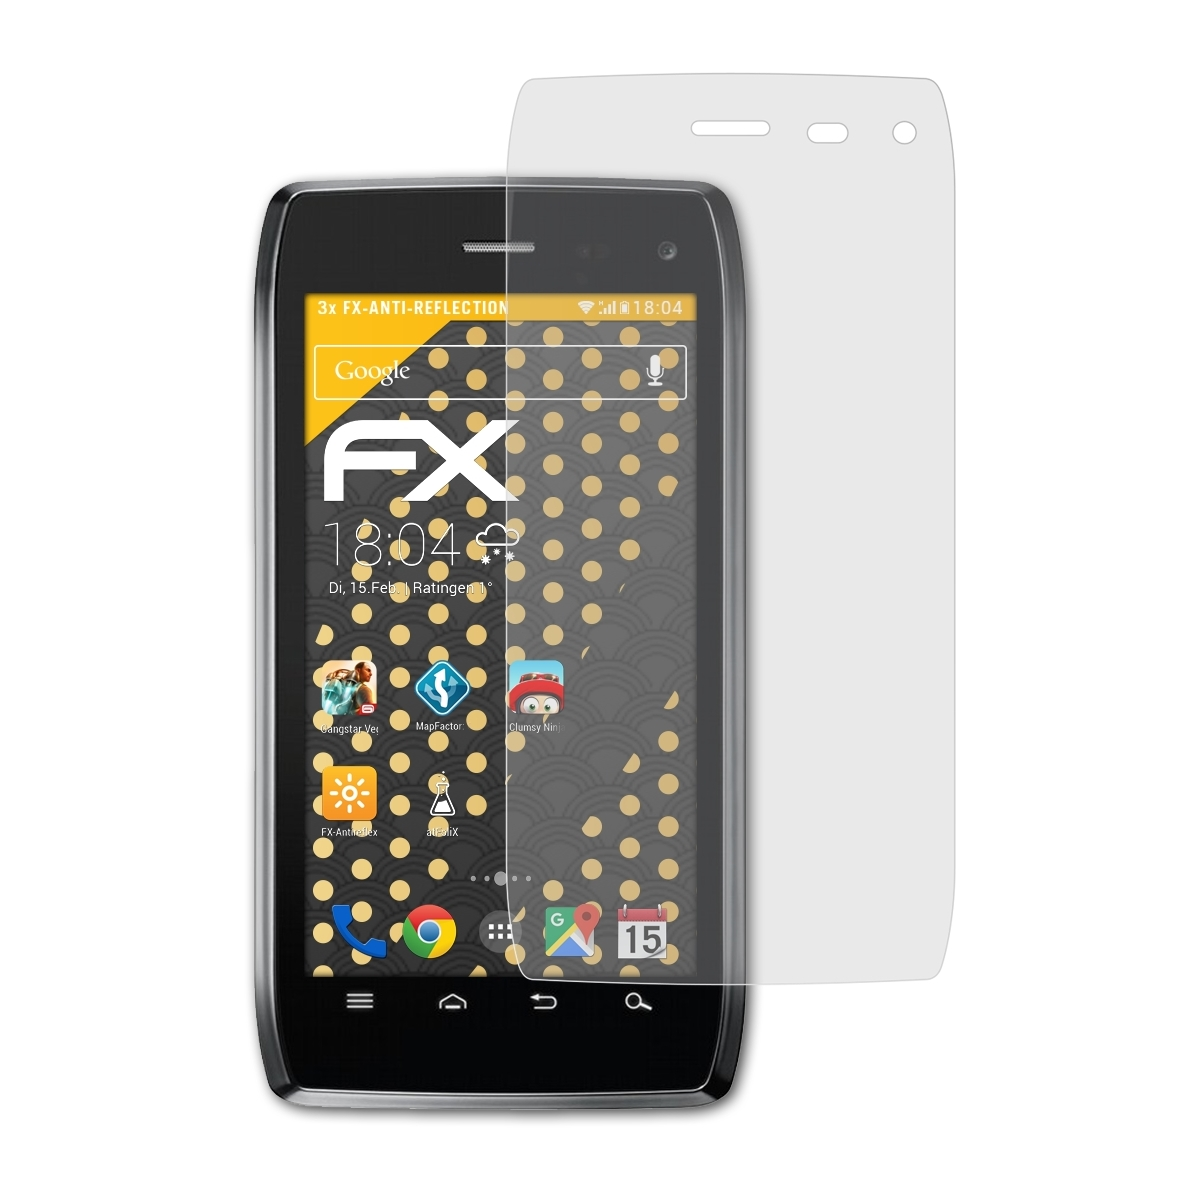 ATFOLIX FX-Antireflex Displayschutz(für 3x Droid Motorola 4)